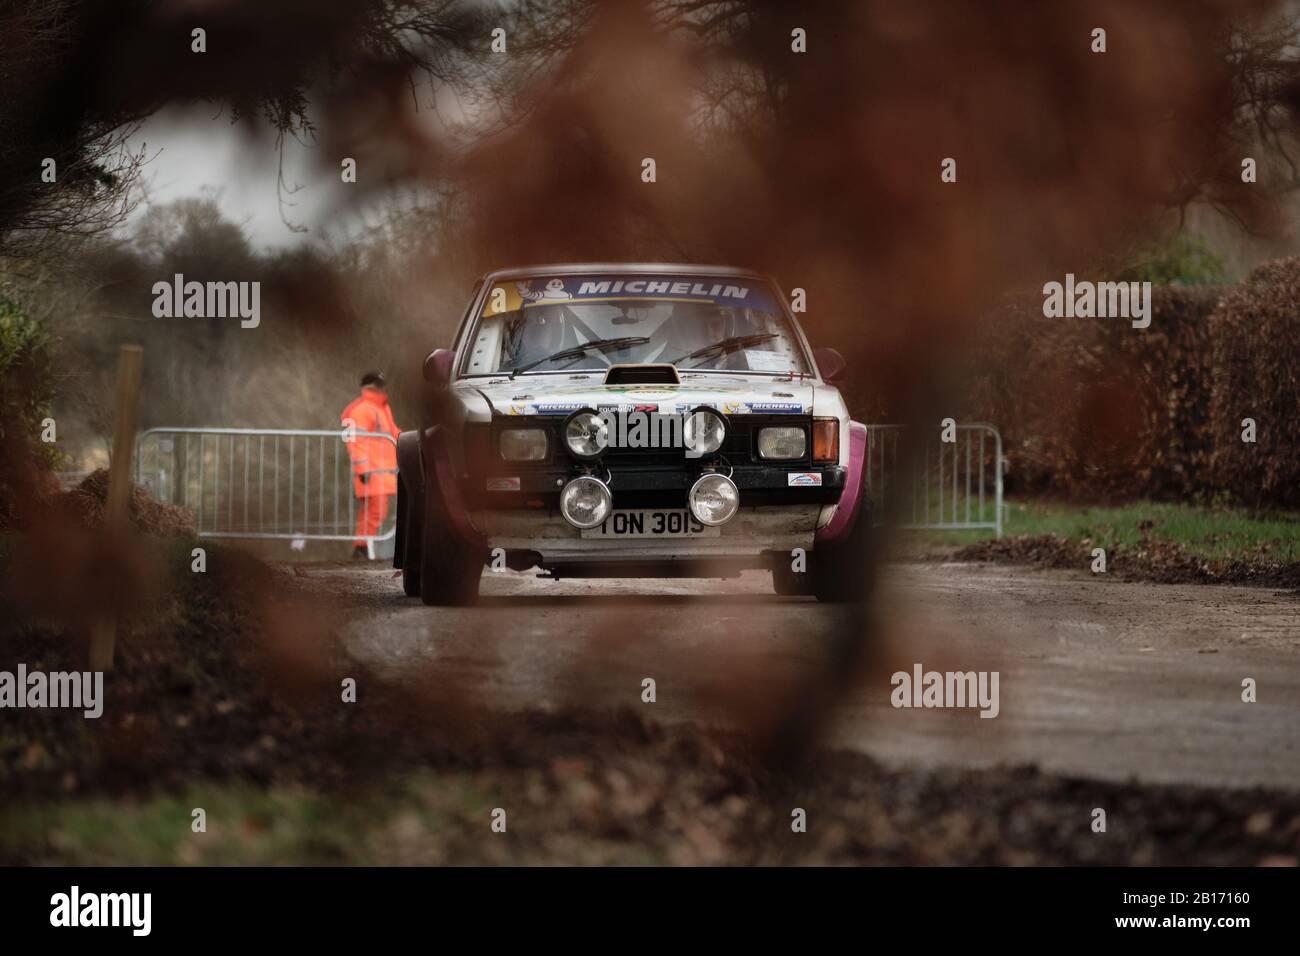 Stoneleigh Park, Warwickshire, Royaume-Uni. 23 février 2020. Le pilote de rallye Cathy Sewart conduit la voiture de rallye Talbot Sunbeam Lotus pendant la course de 2020 Retro au circuit de Stoneleigh Park. Photo De Gergo Toth / Alay Live News Banque D'Images